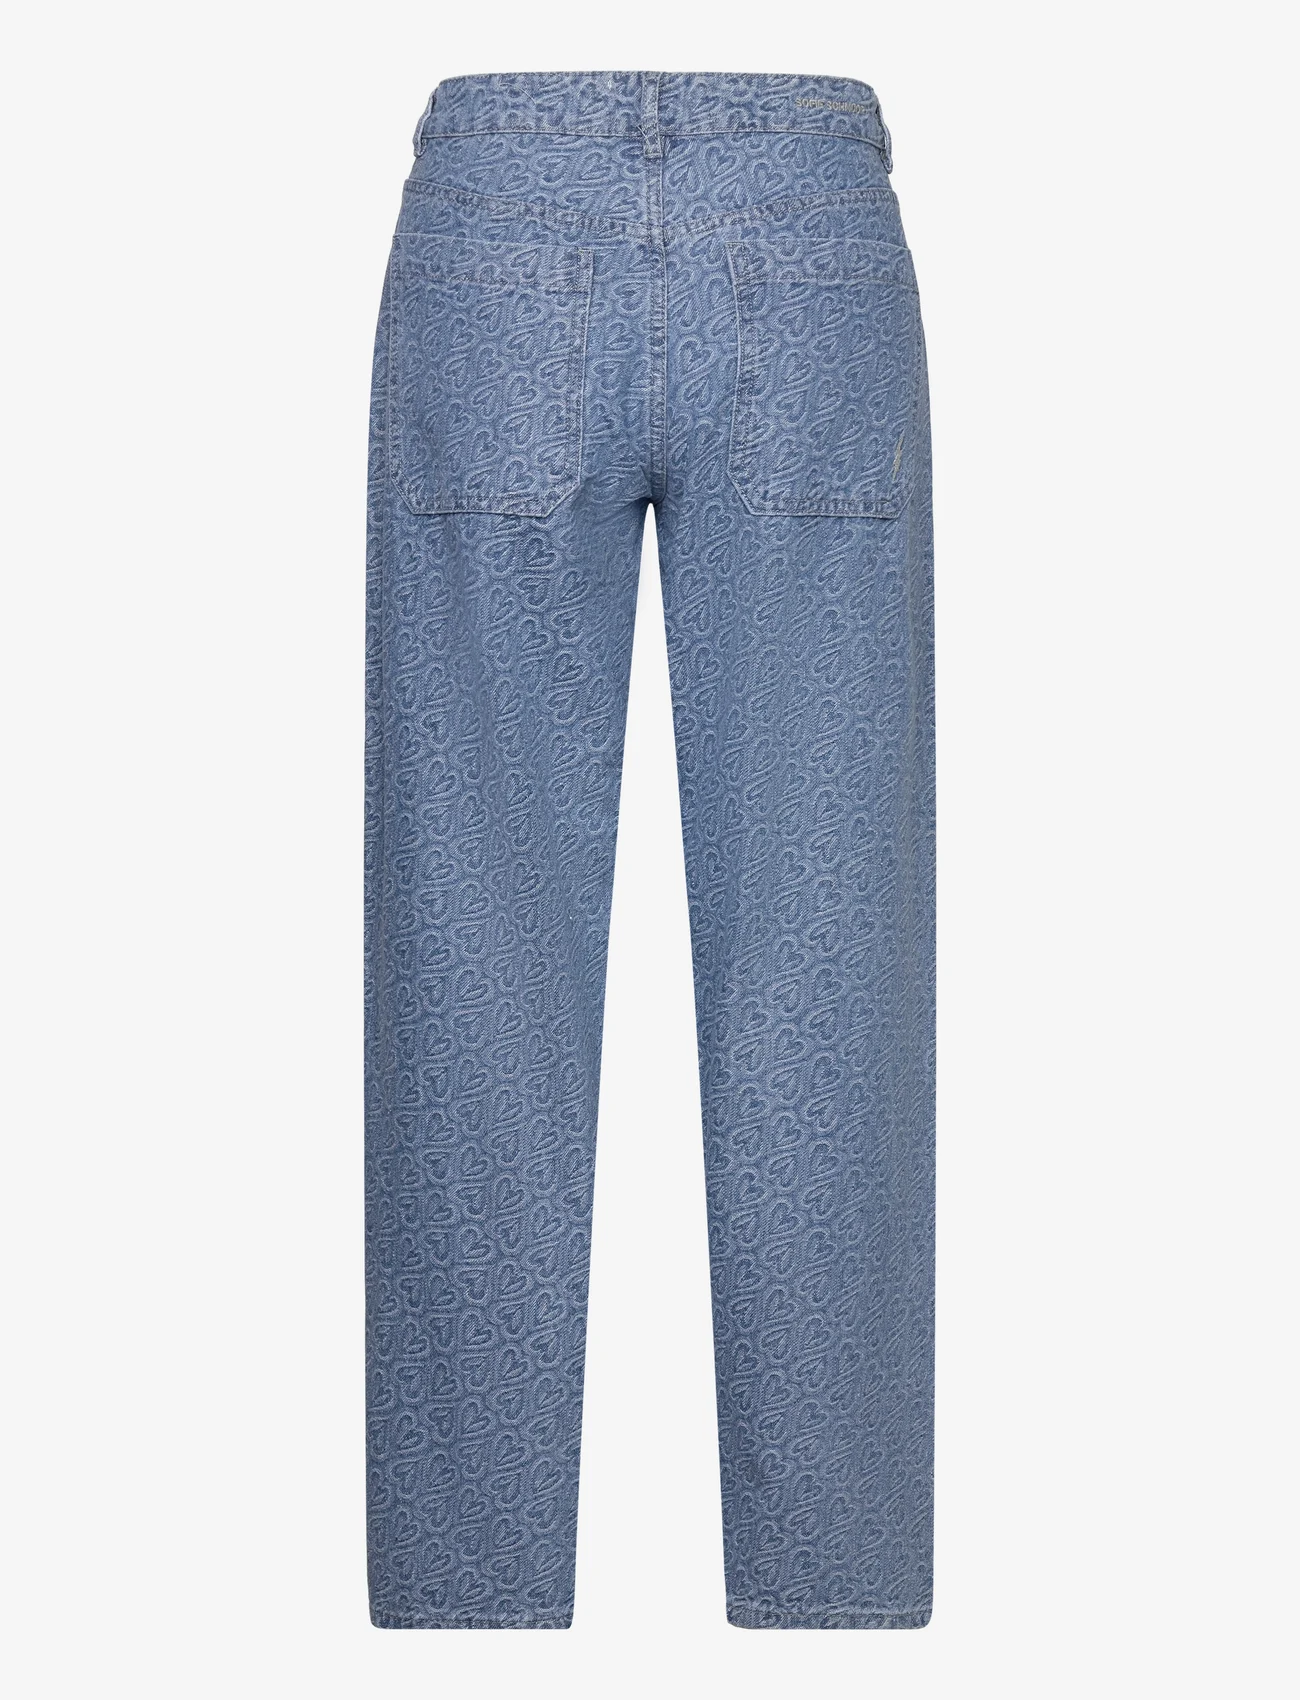 Sofie Schnoor - Trousers - jeans met wijde pijpen - light denim blue - 1